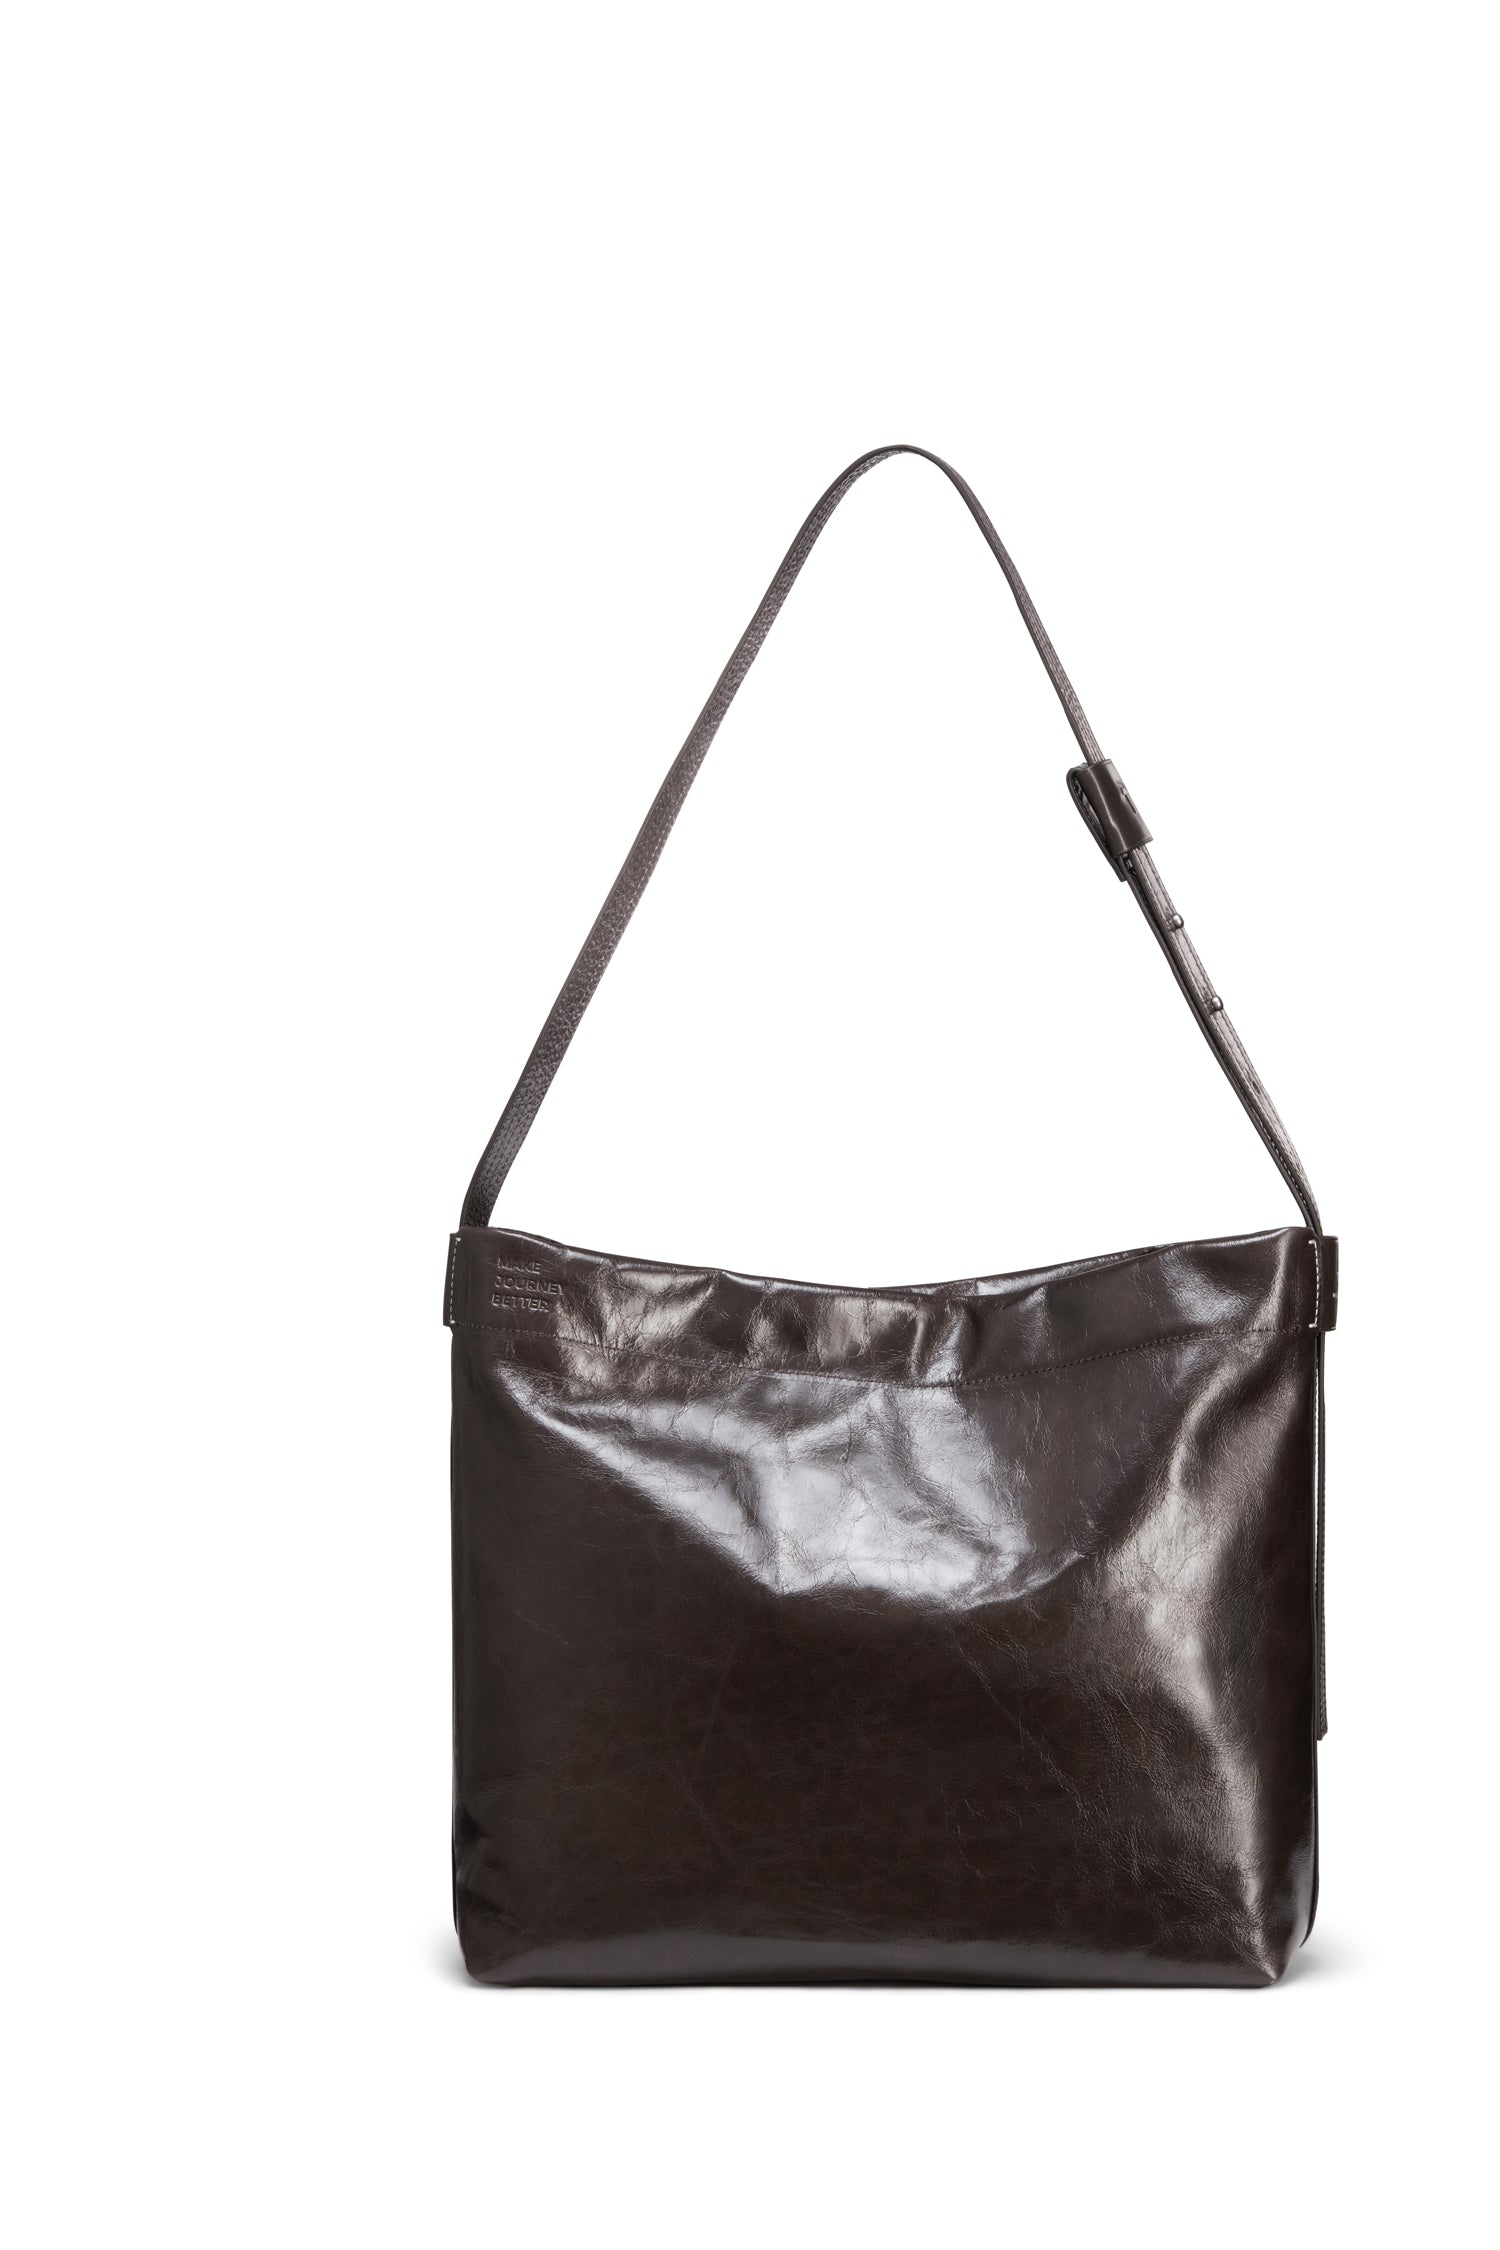 TUPLUS Urban Luxe Tote Bag